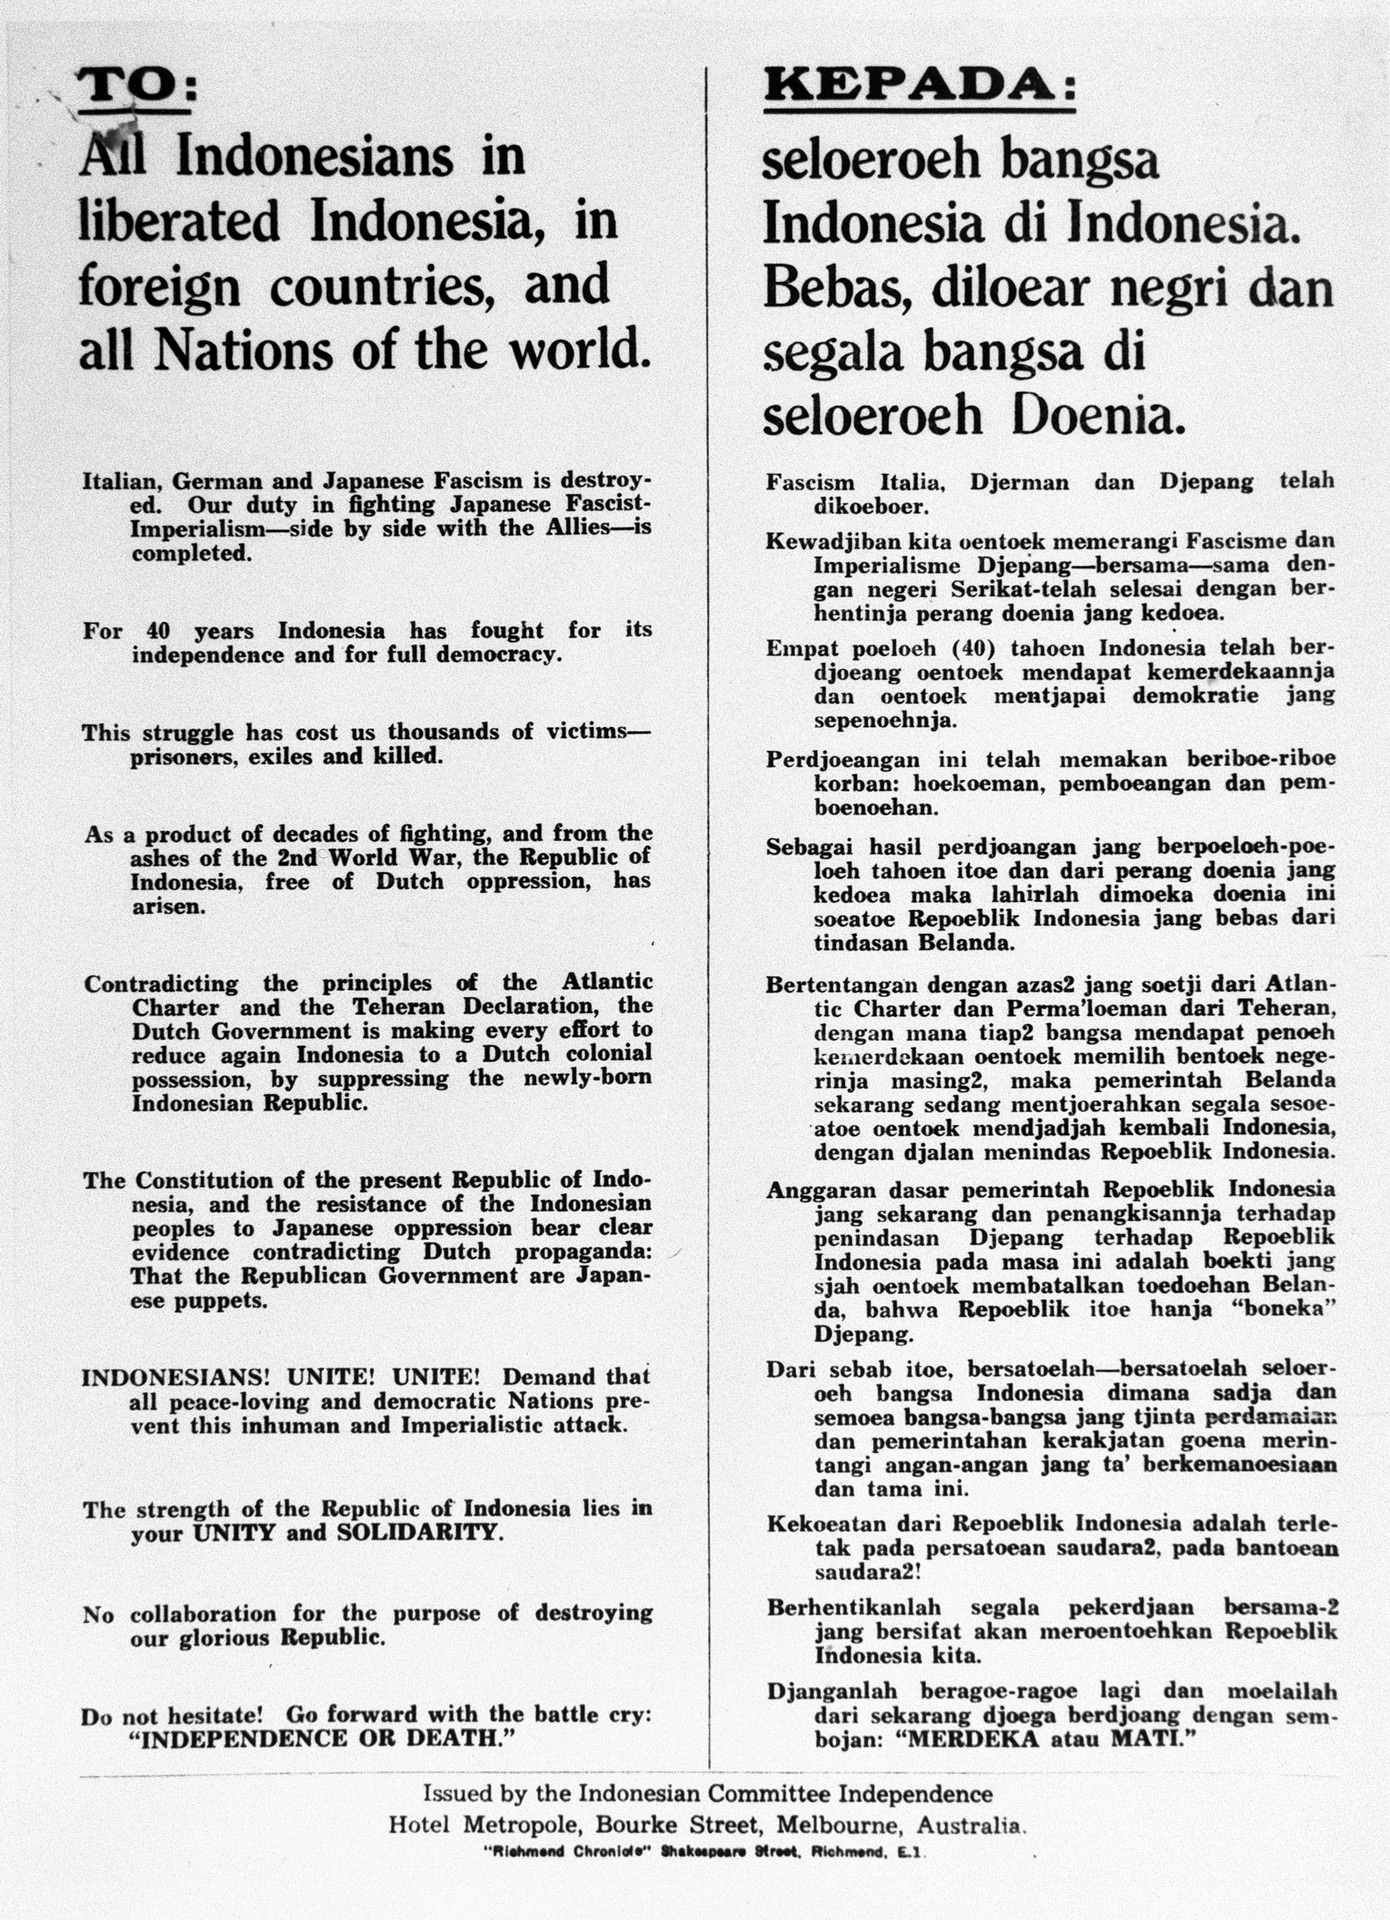 Salah satu negara yang sangat mendukung perjuangan indonesia dalam mempertahankan kemerdekaan adalah negara australia. salah satu peran australia dalam mendukung kemerdekaan indonesia